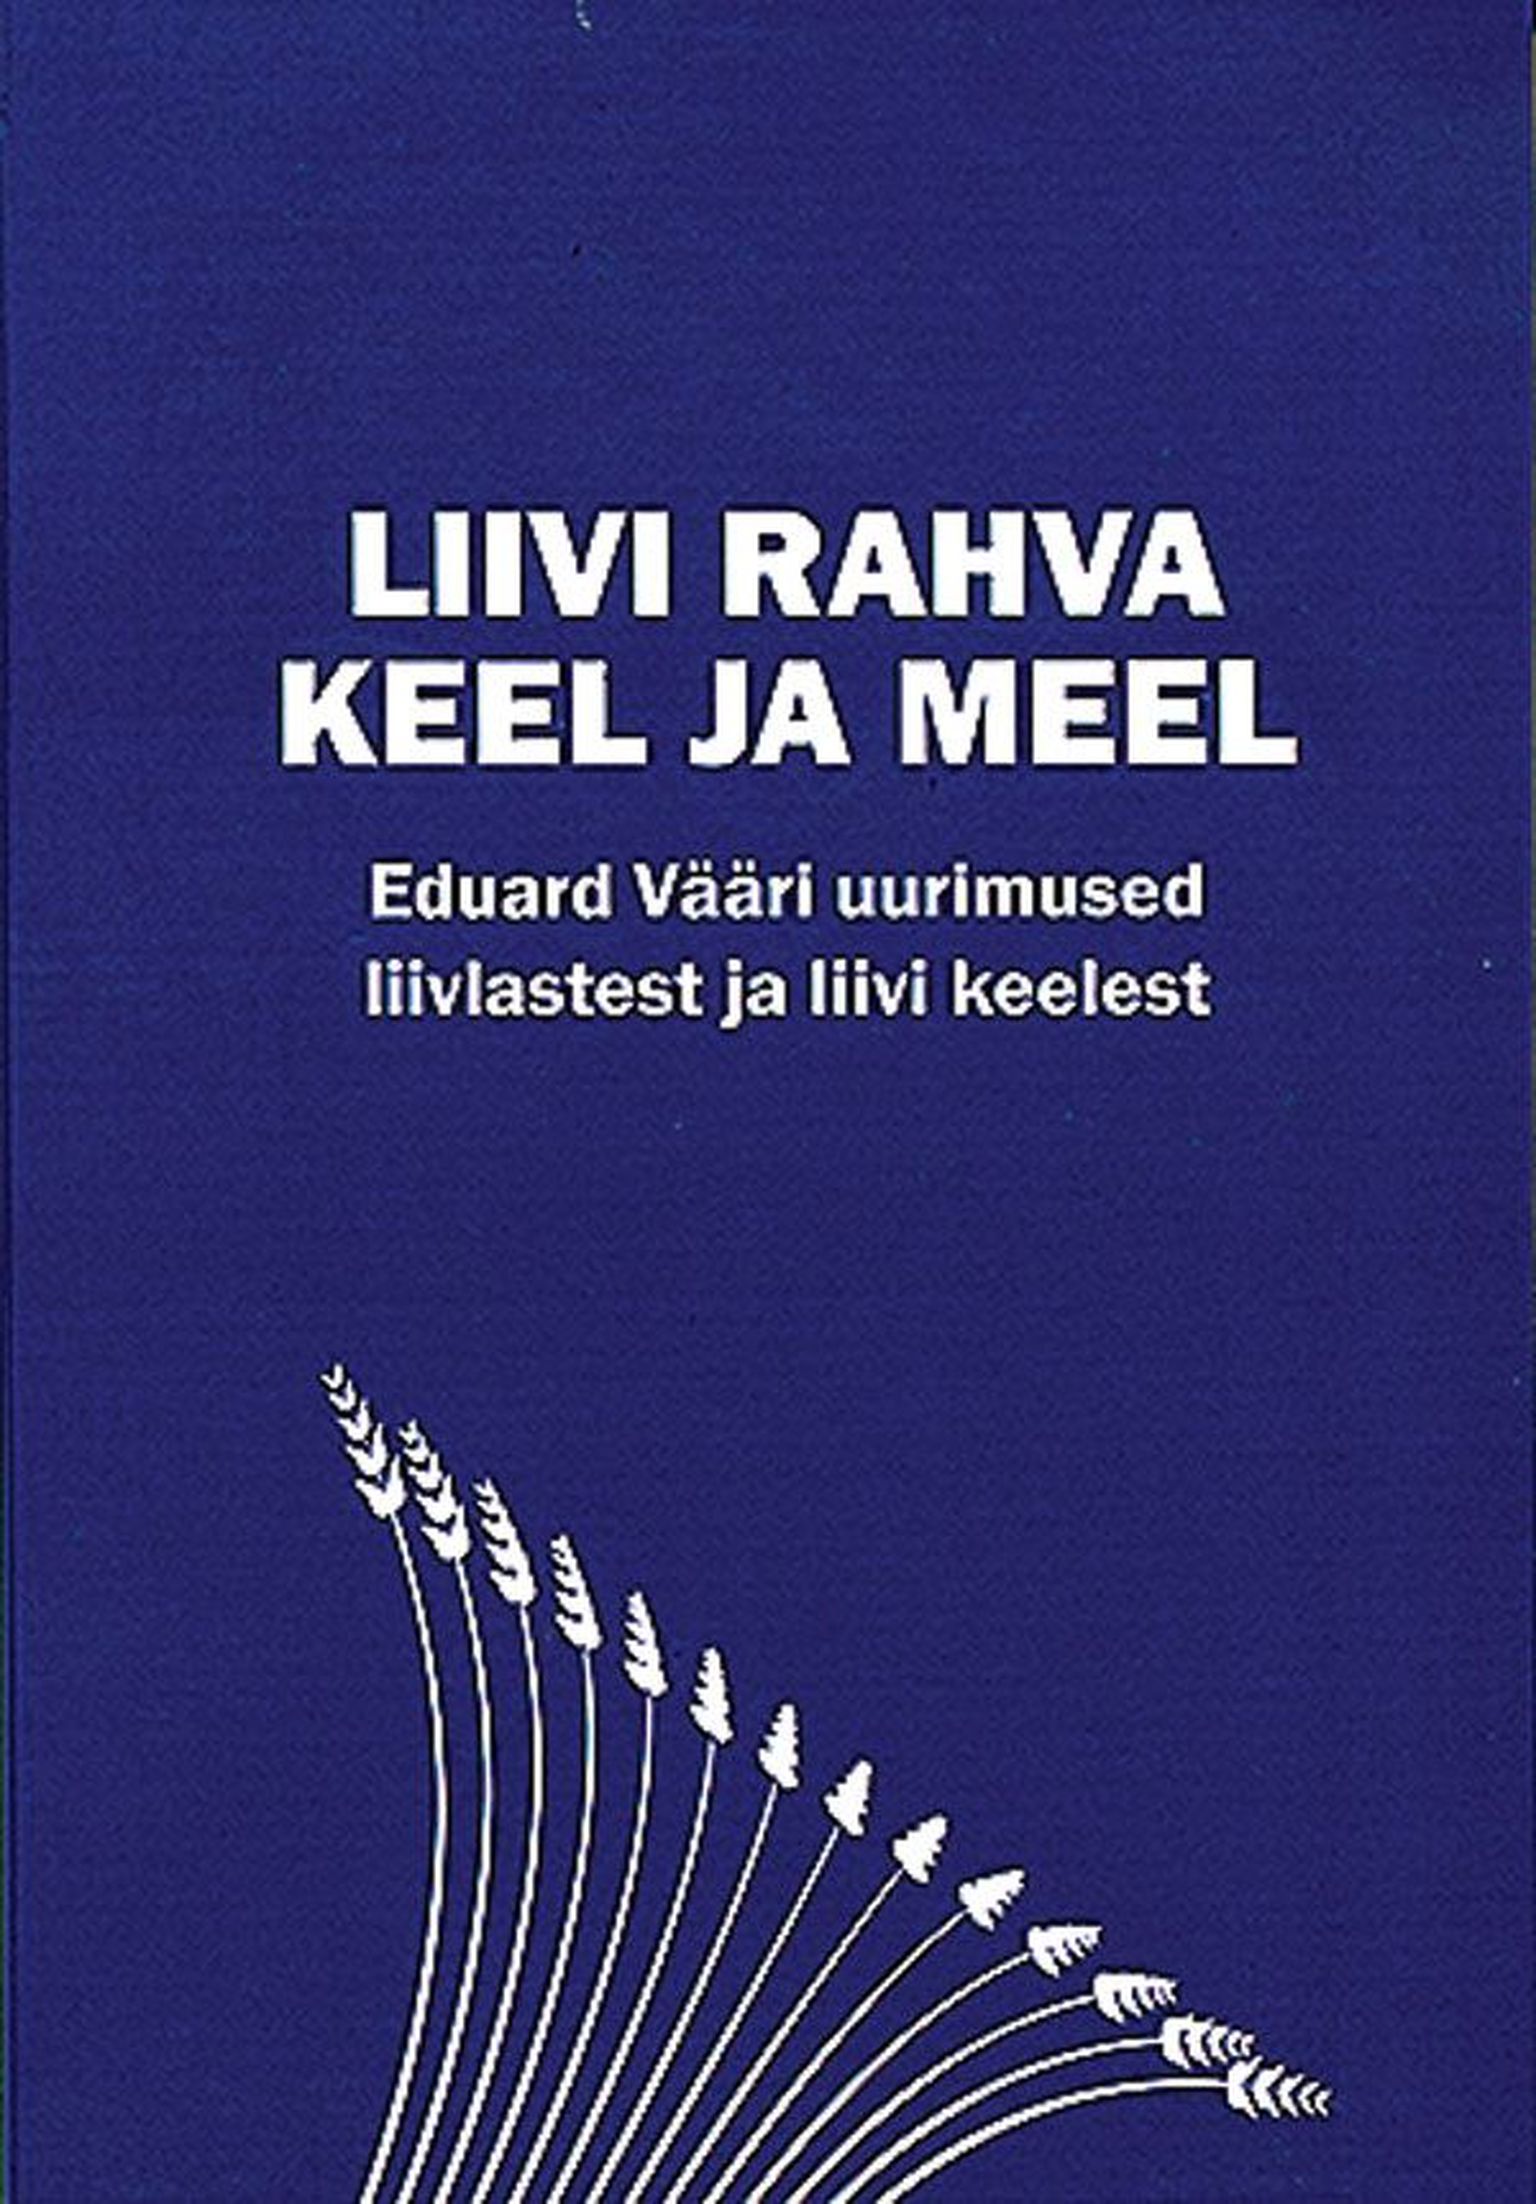 Raamat

«Liivi rahva keel ja meel»

Eduard Vääri liiviteemaliste uurimuste kogumik

Tallinn 2016, 430 lk.